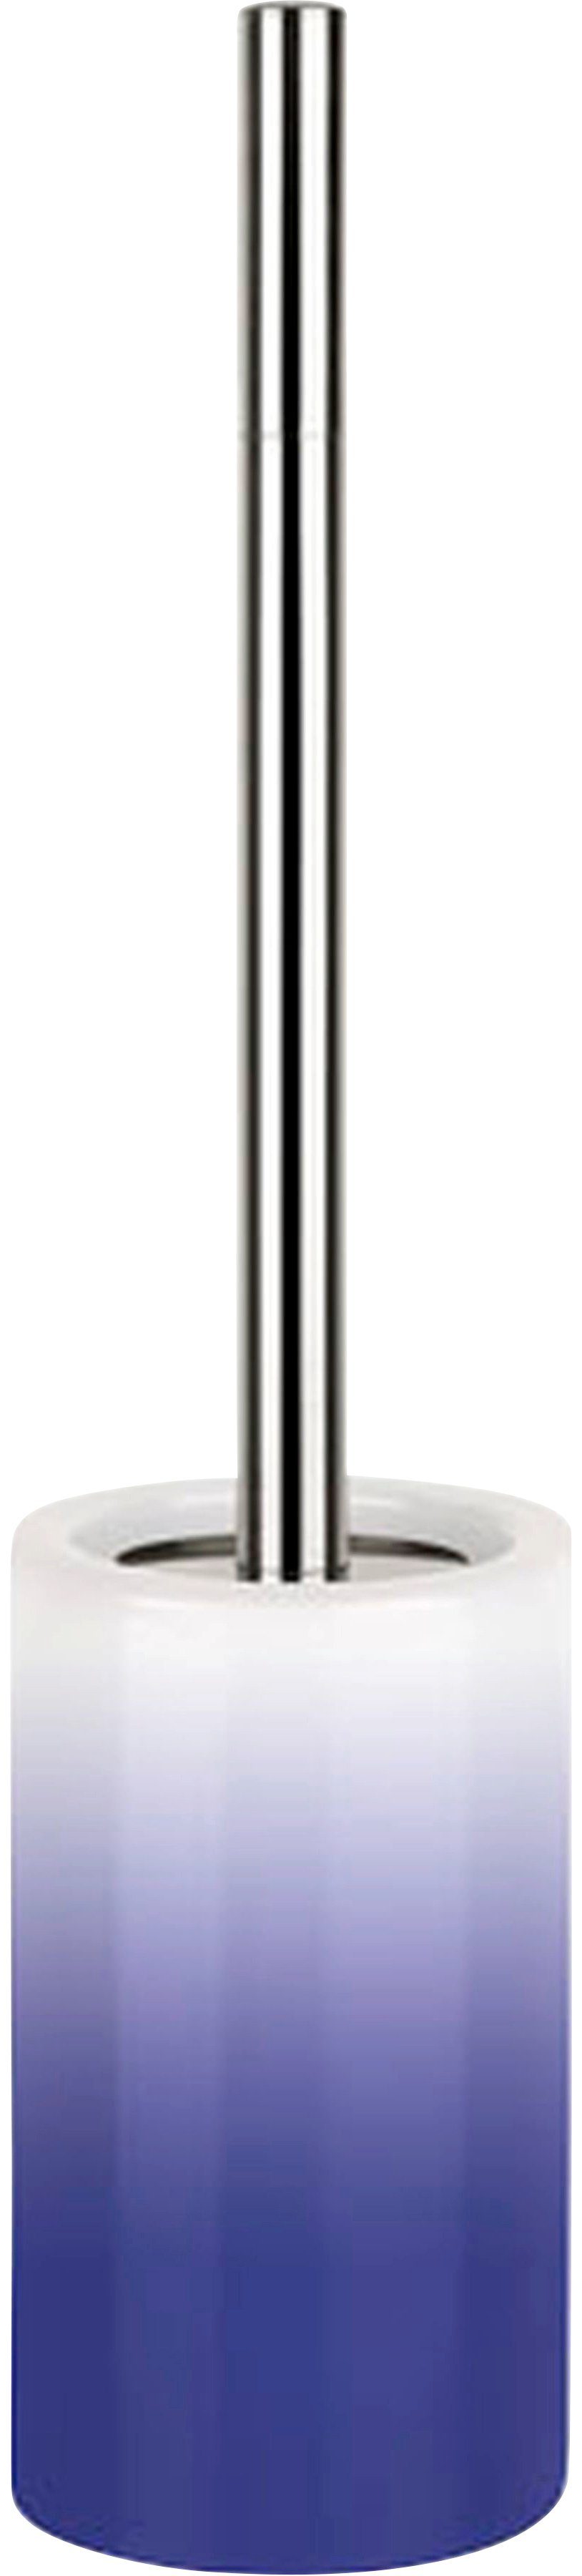 spirella WC-Garnitur TUBE Gradient, Toilettenbürste Hochwertig mit hygienischem Behälter navy | Toilettenbürstenhalter